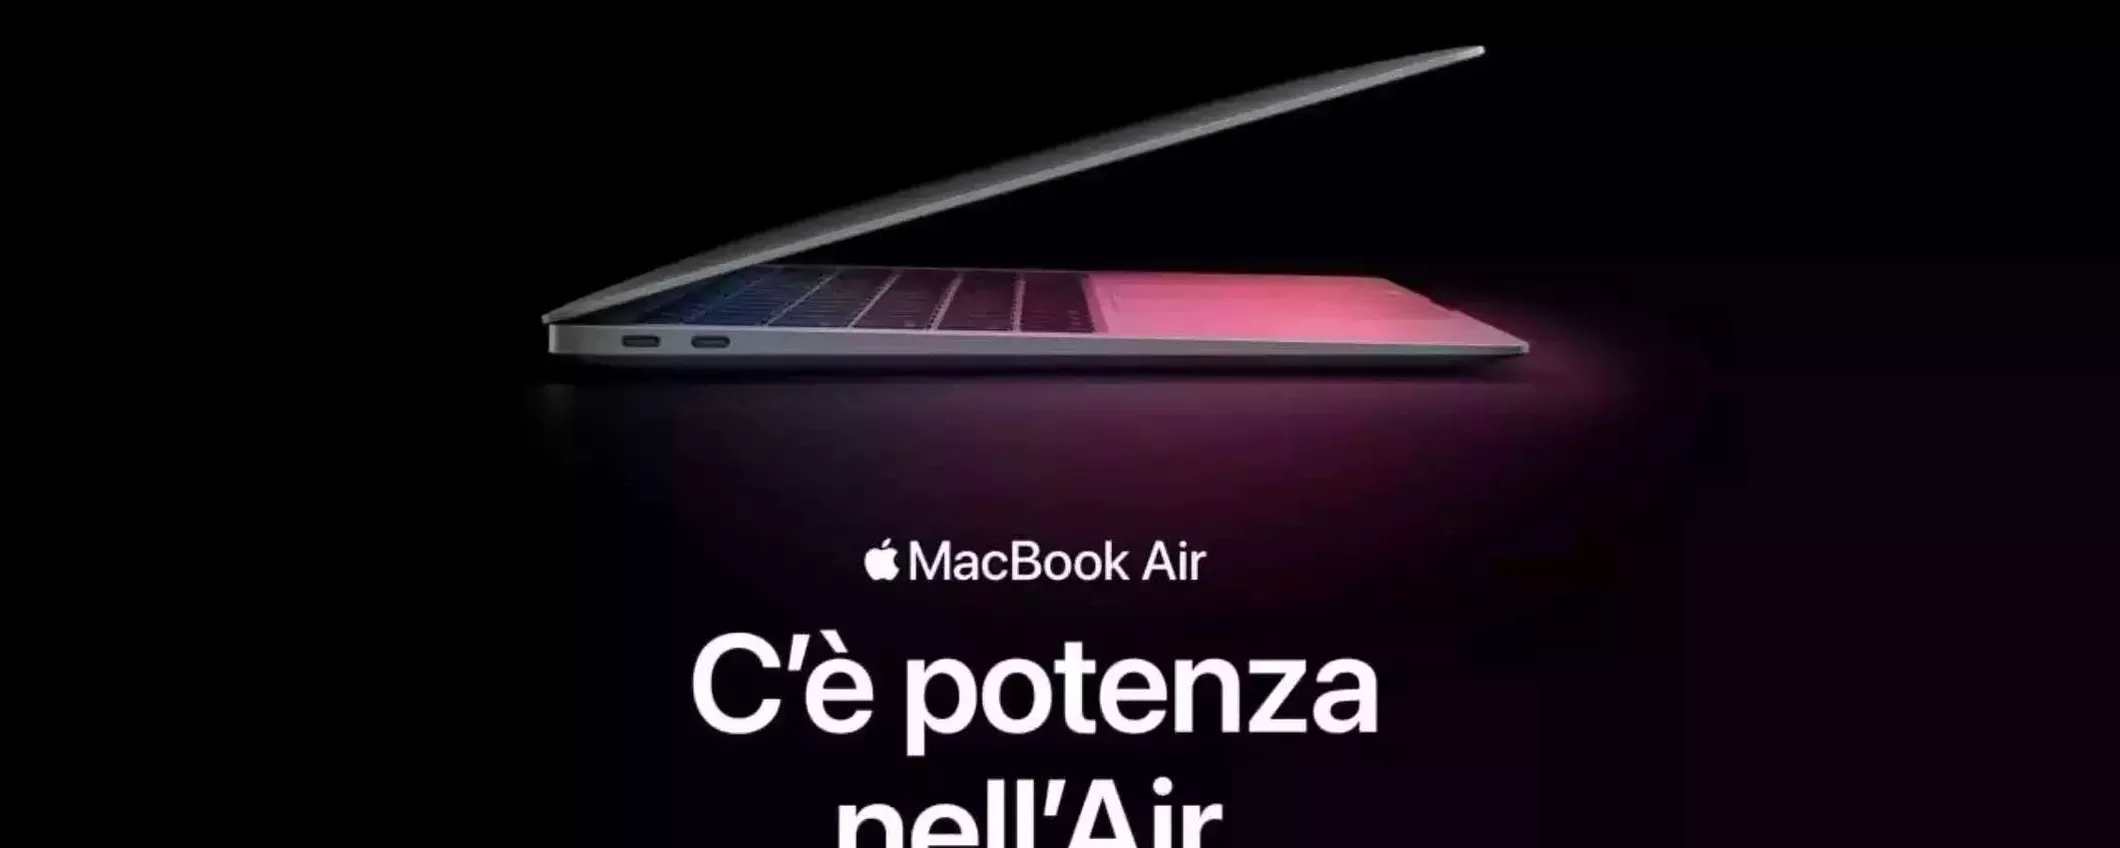 MacBook Air con M1: è già Black Friday su Amazon con QUEST'OFFERTA